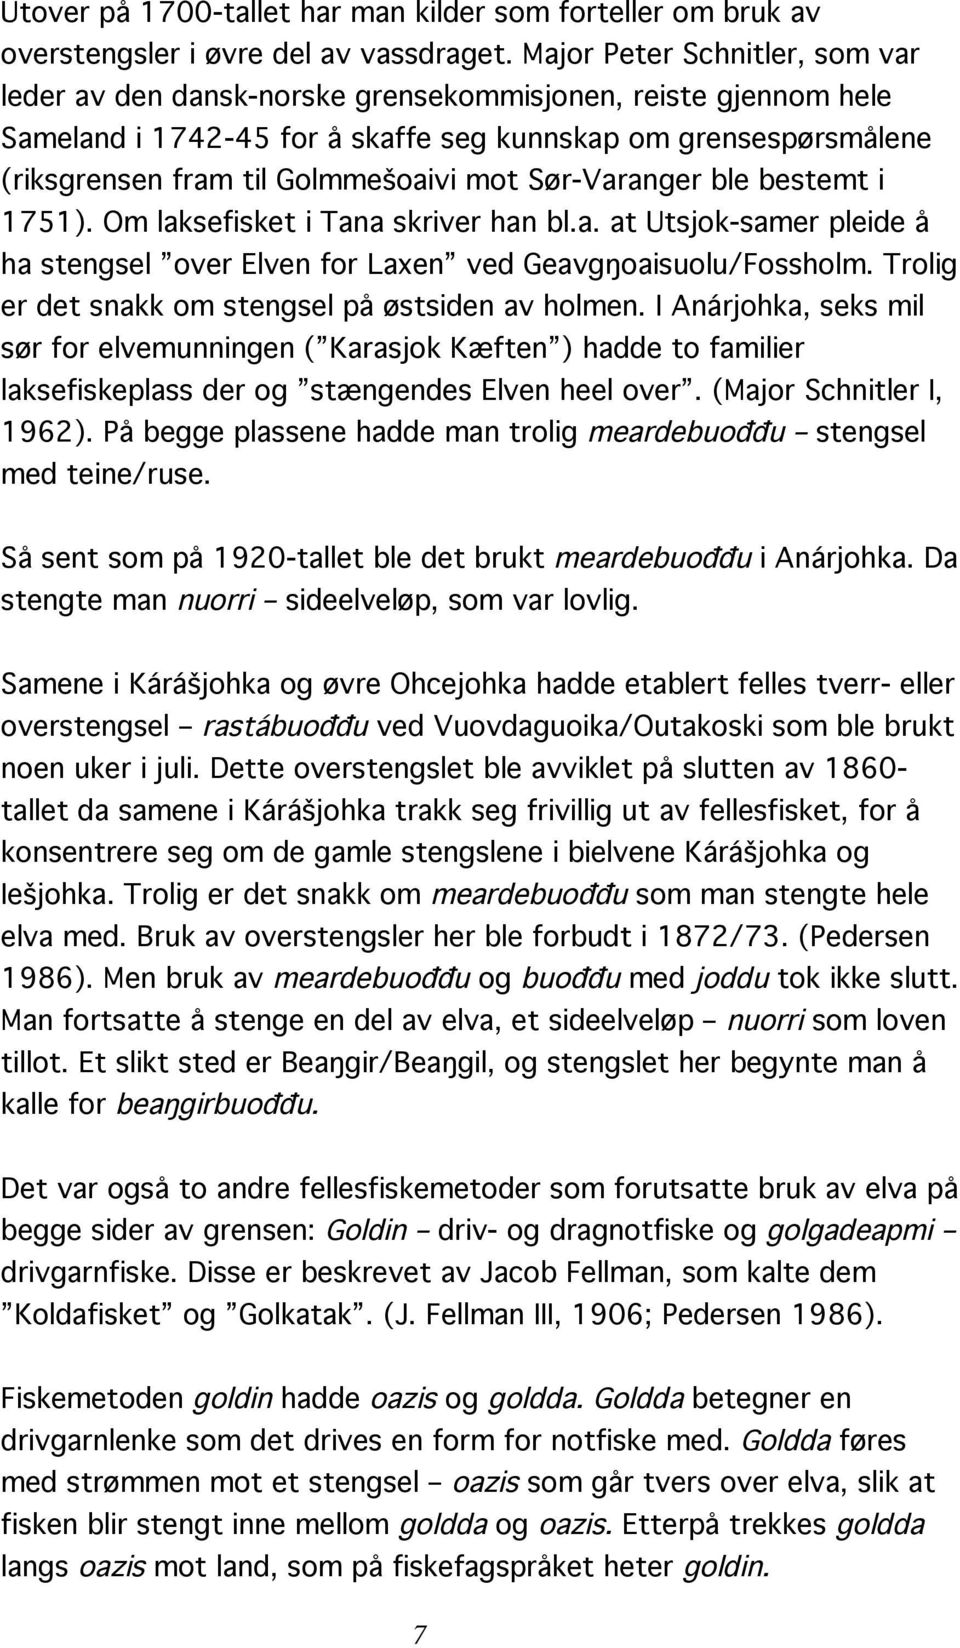 mot Sør-Varanger ble bestemt i 1751). Om laksefisket i Tana skriver han bl.a. at Utsjok-samer pleide å ha stengsel over Elven for Laxen ved Geavgŋoaisuolu/Fossholm.